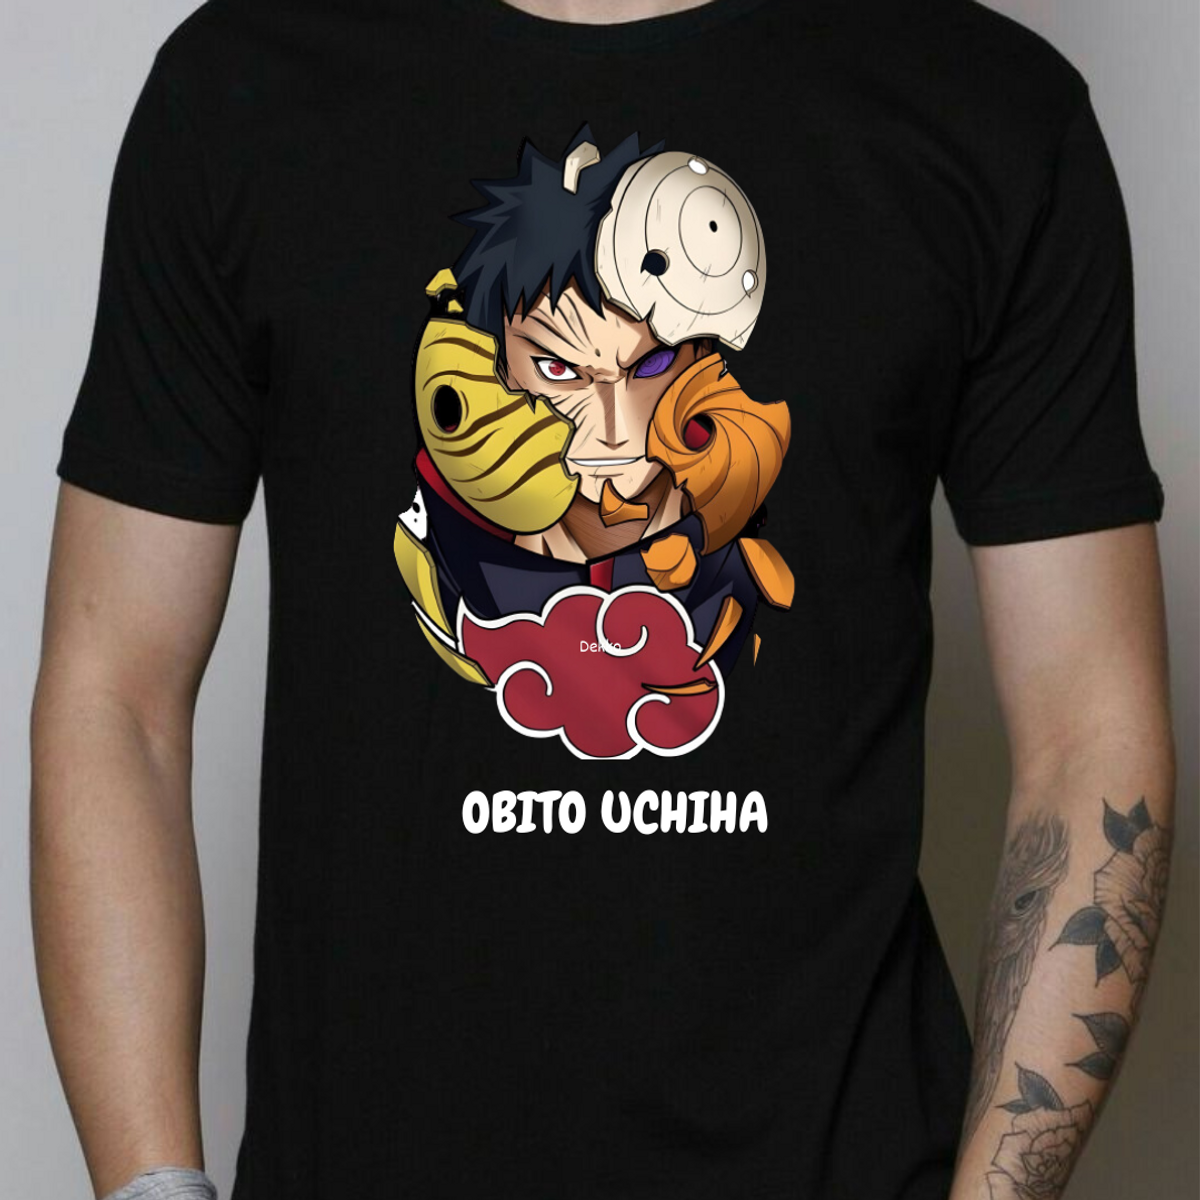 Nome do produto: Camisa Obito Uchiha